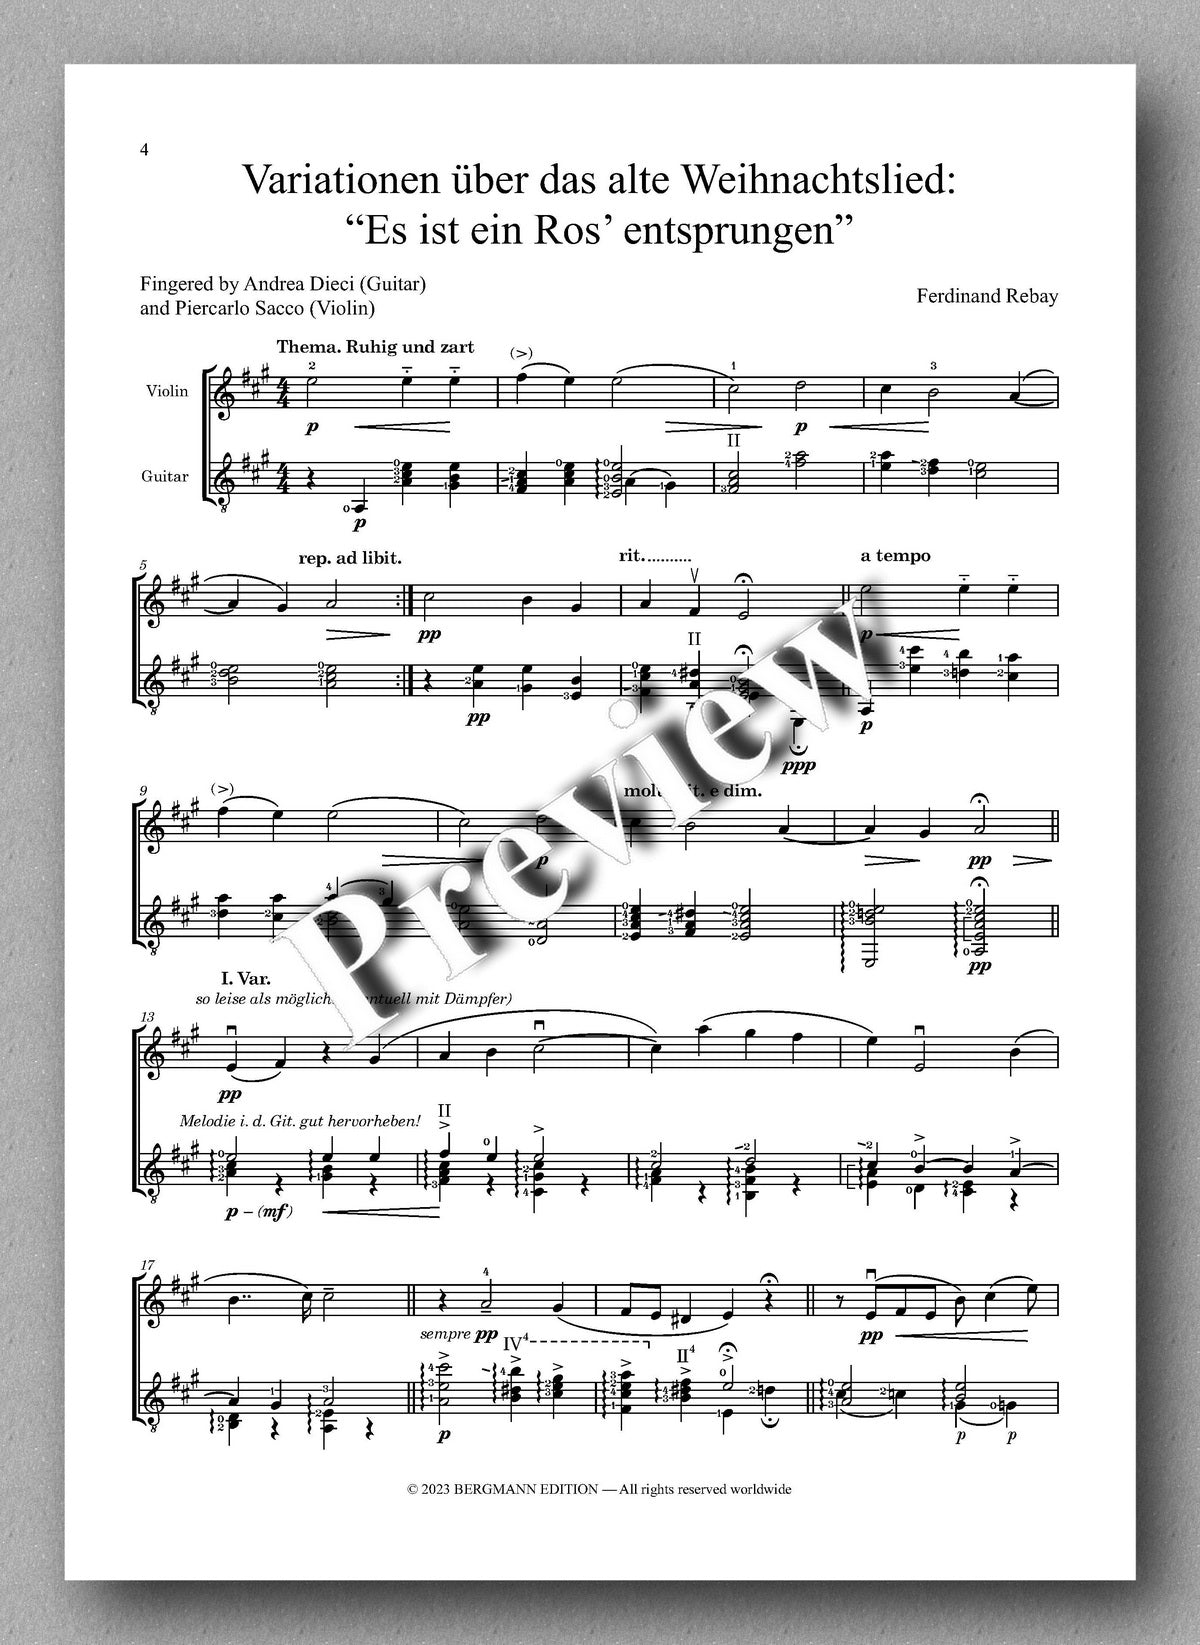 Ferdinand Rebay, Variationen über das alte Weihnachtslied: “Es ist ein Ros’ entsprungen” - preview of the music score 1